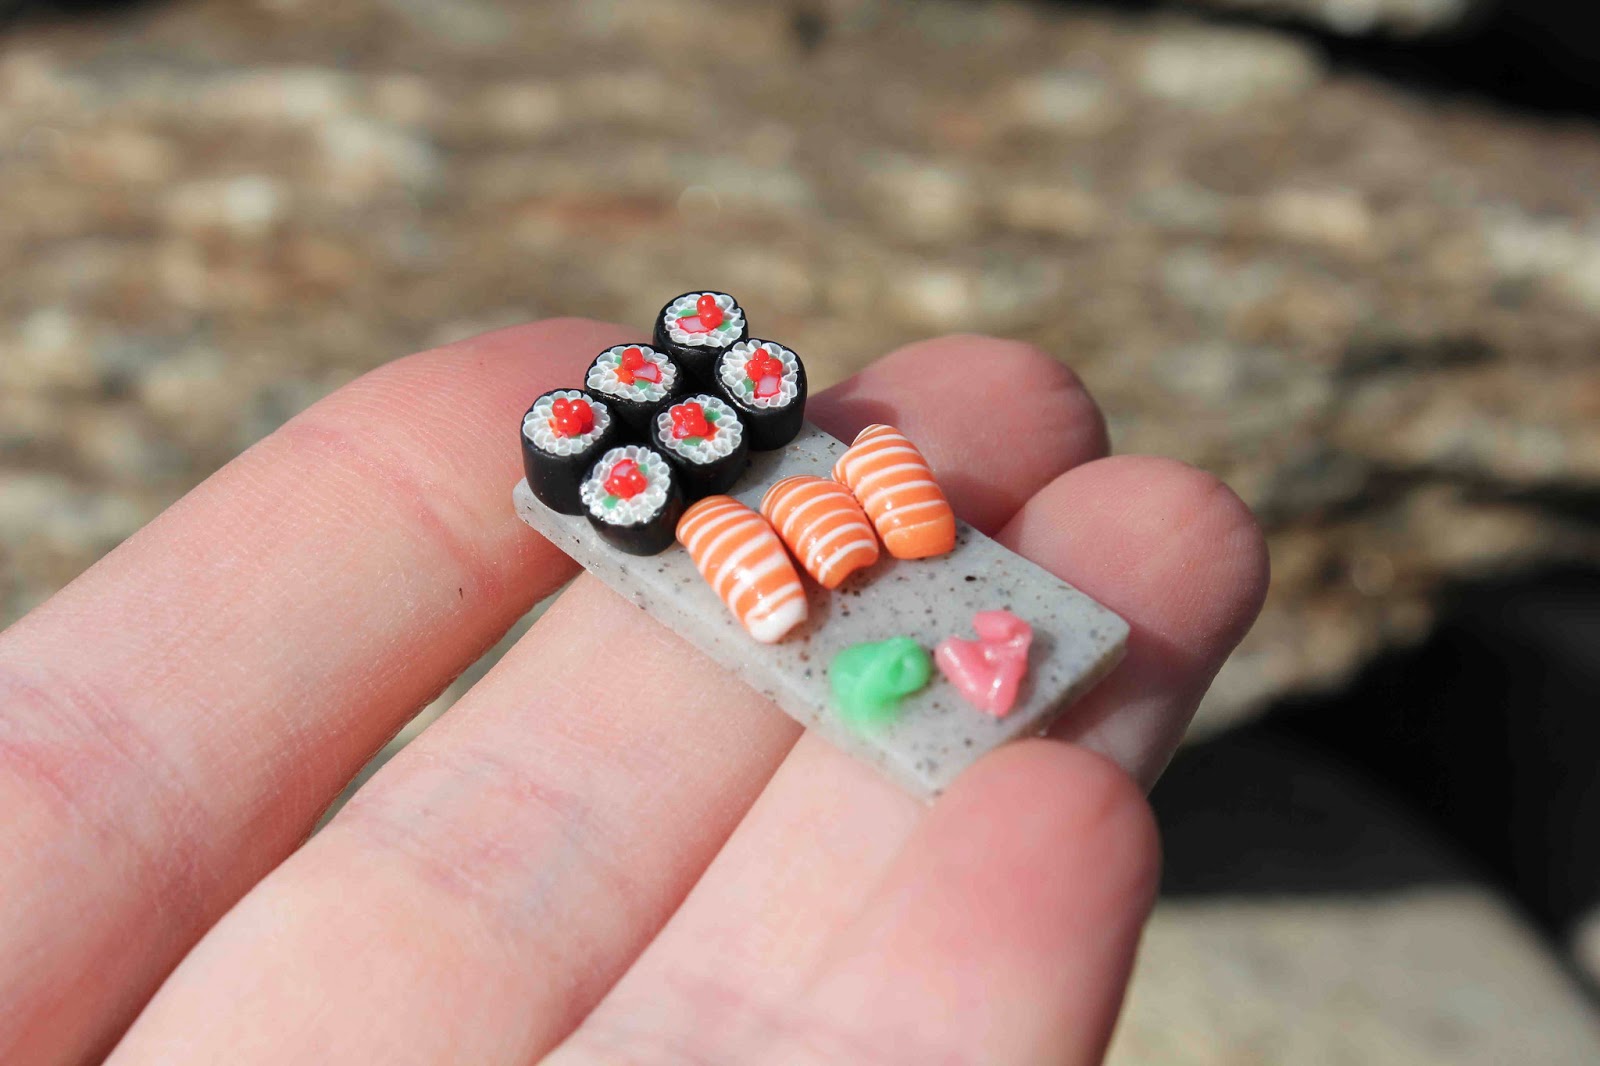 Суши из пластилина. Суши из полимерной глины. Миниатюрная еда. Суши миниатюра. Мини еда из пластилина суши.